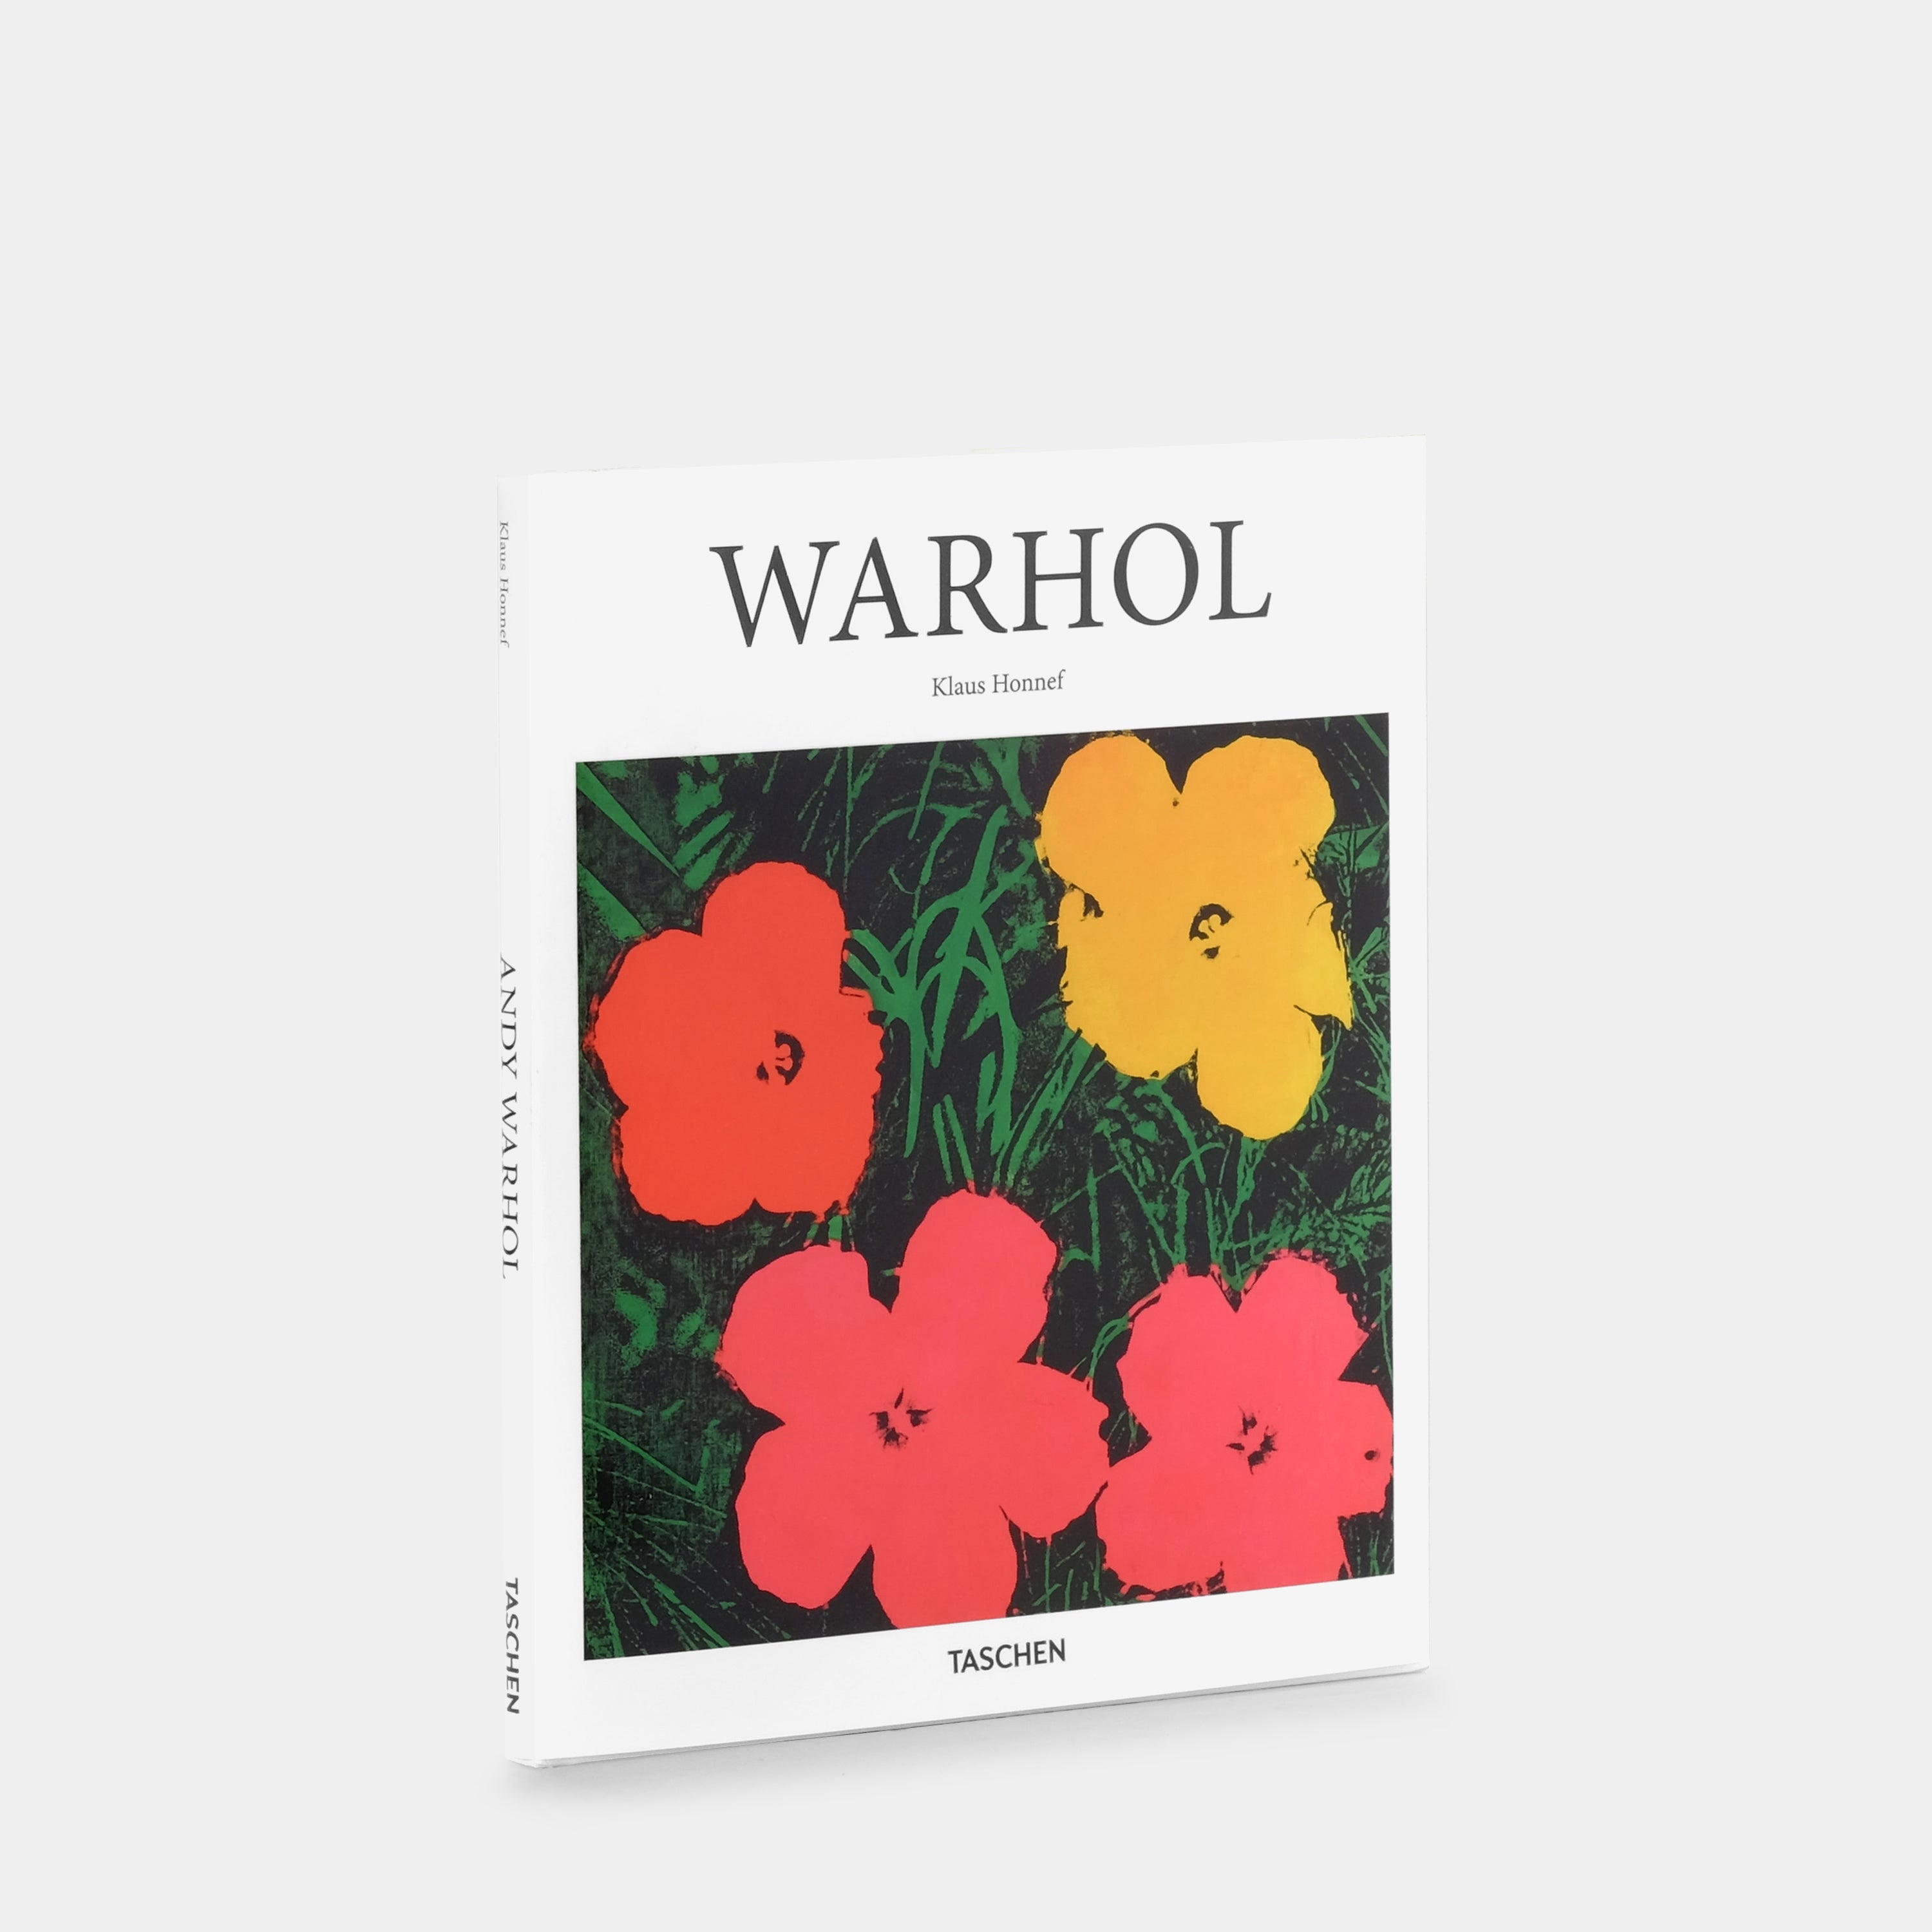 Warhol (Basic Art Series) by Klaus Honnef Taschen Book